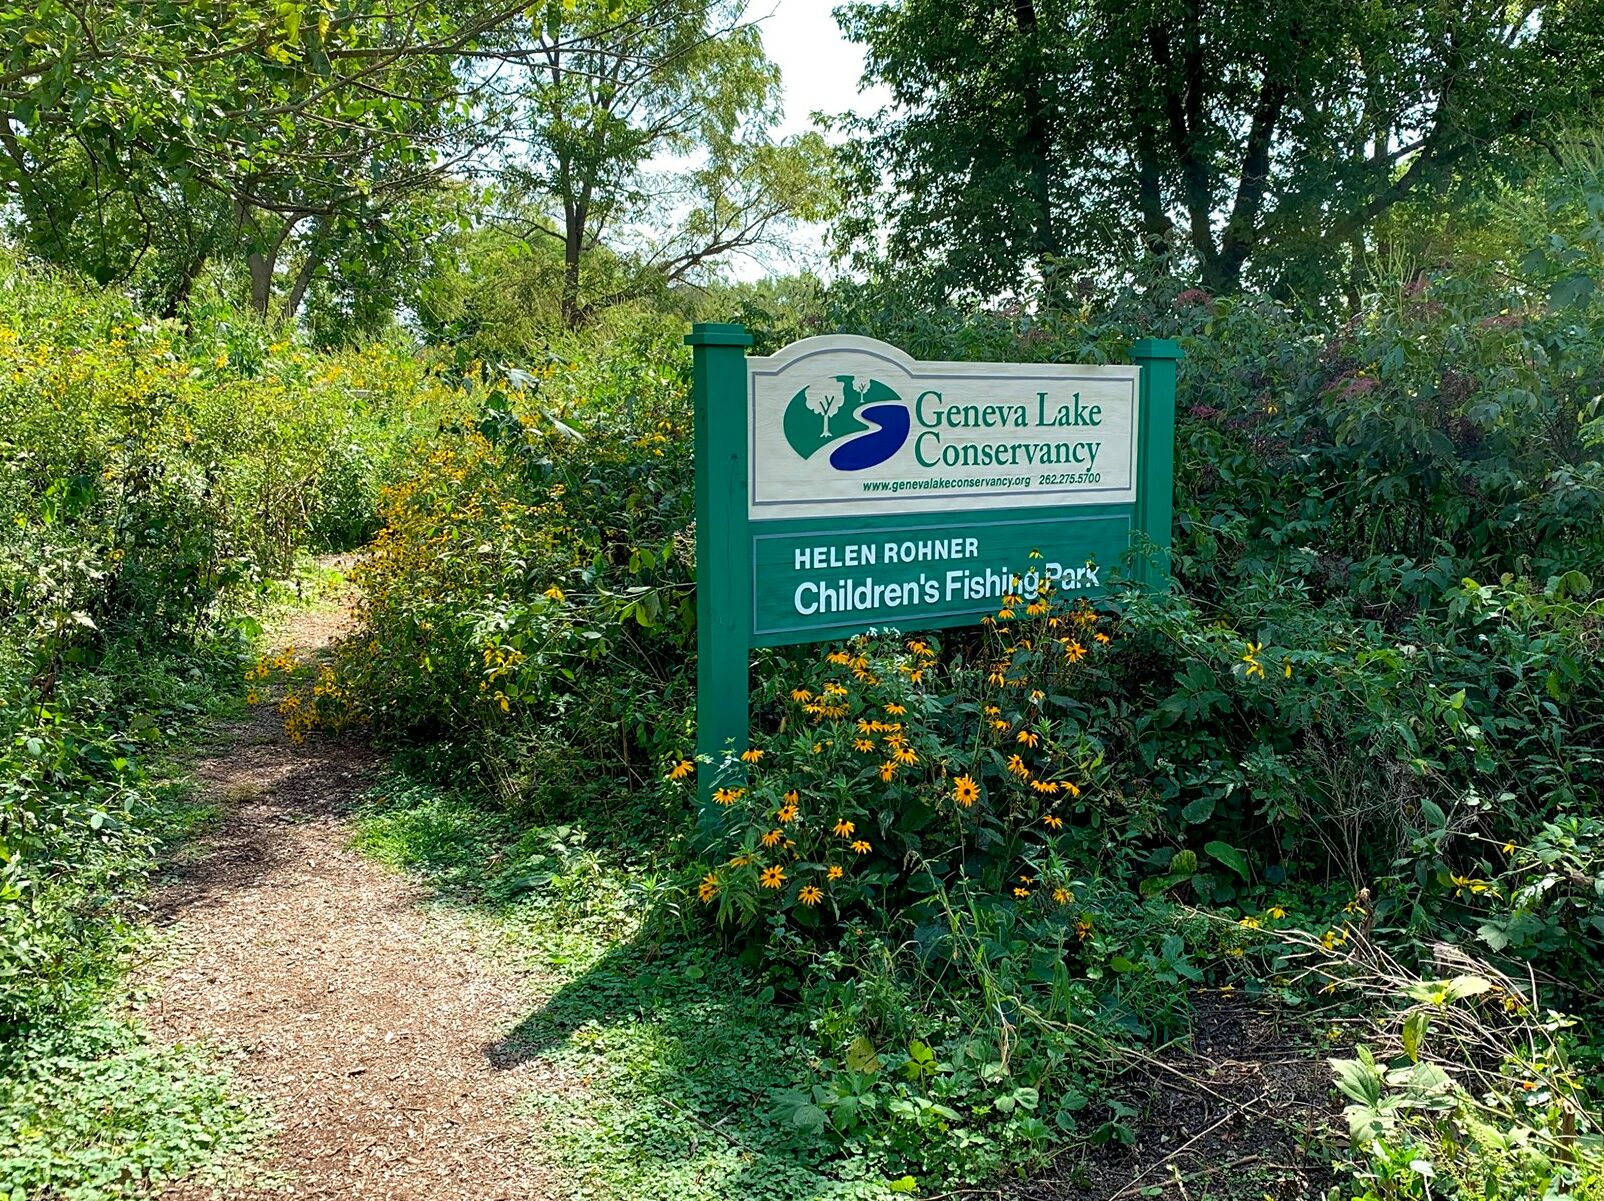 Green park sign for Geneva Lake Conservancy